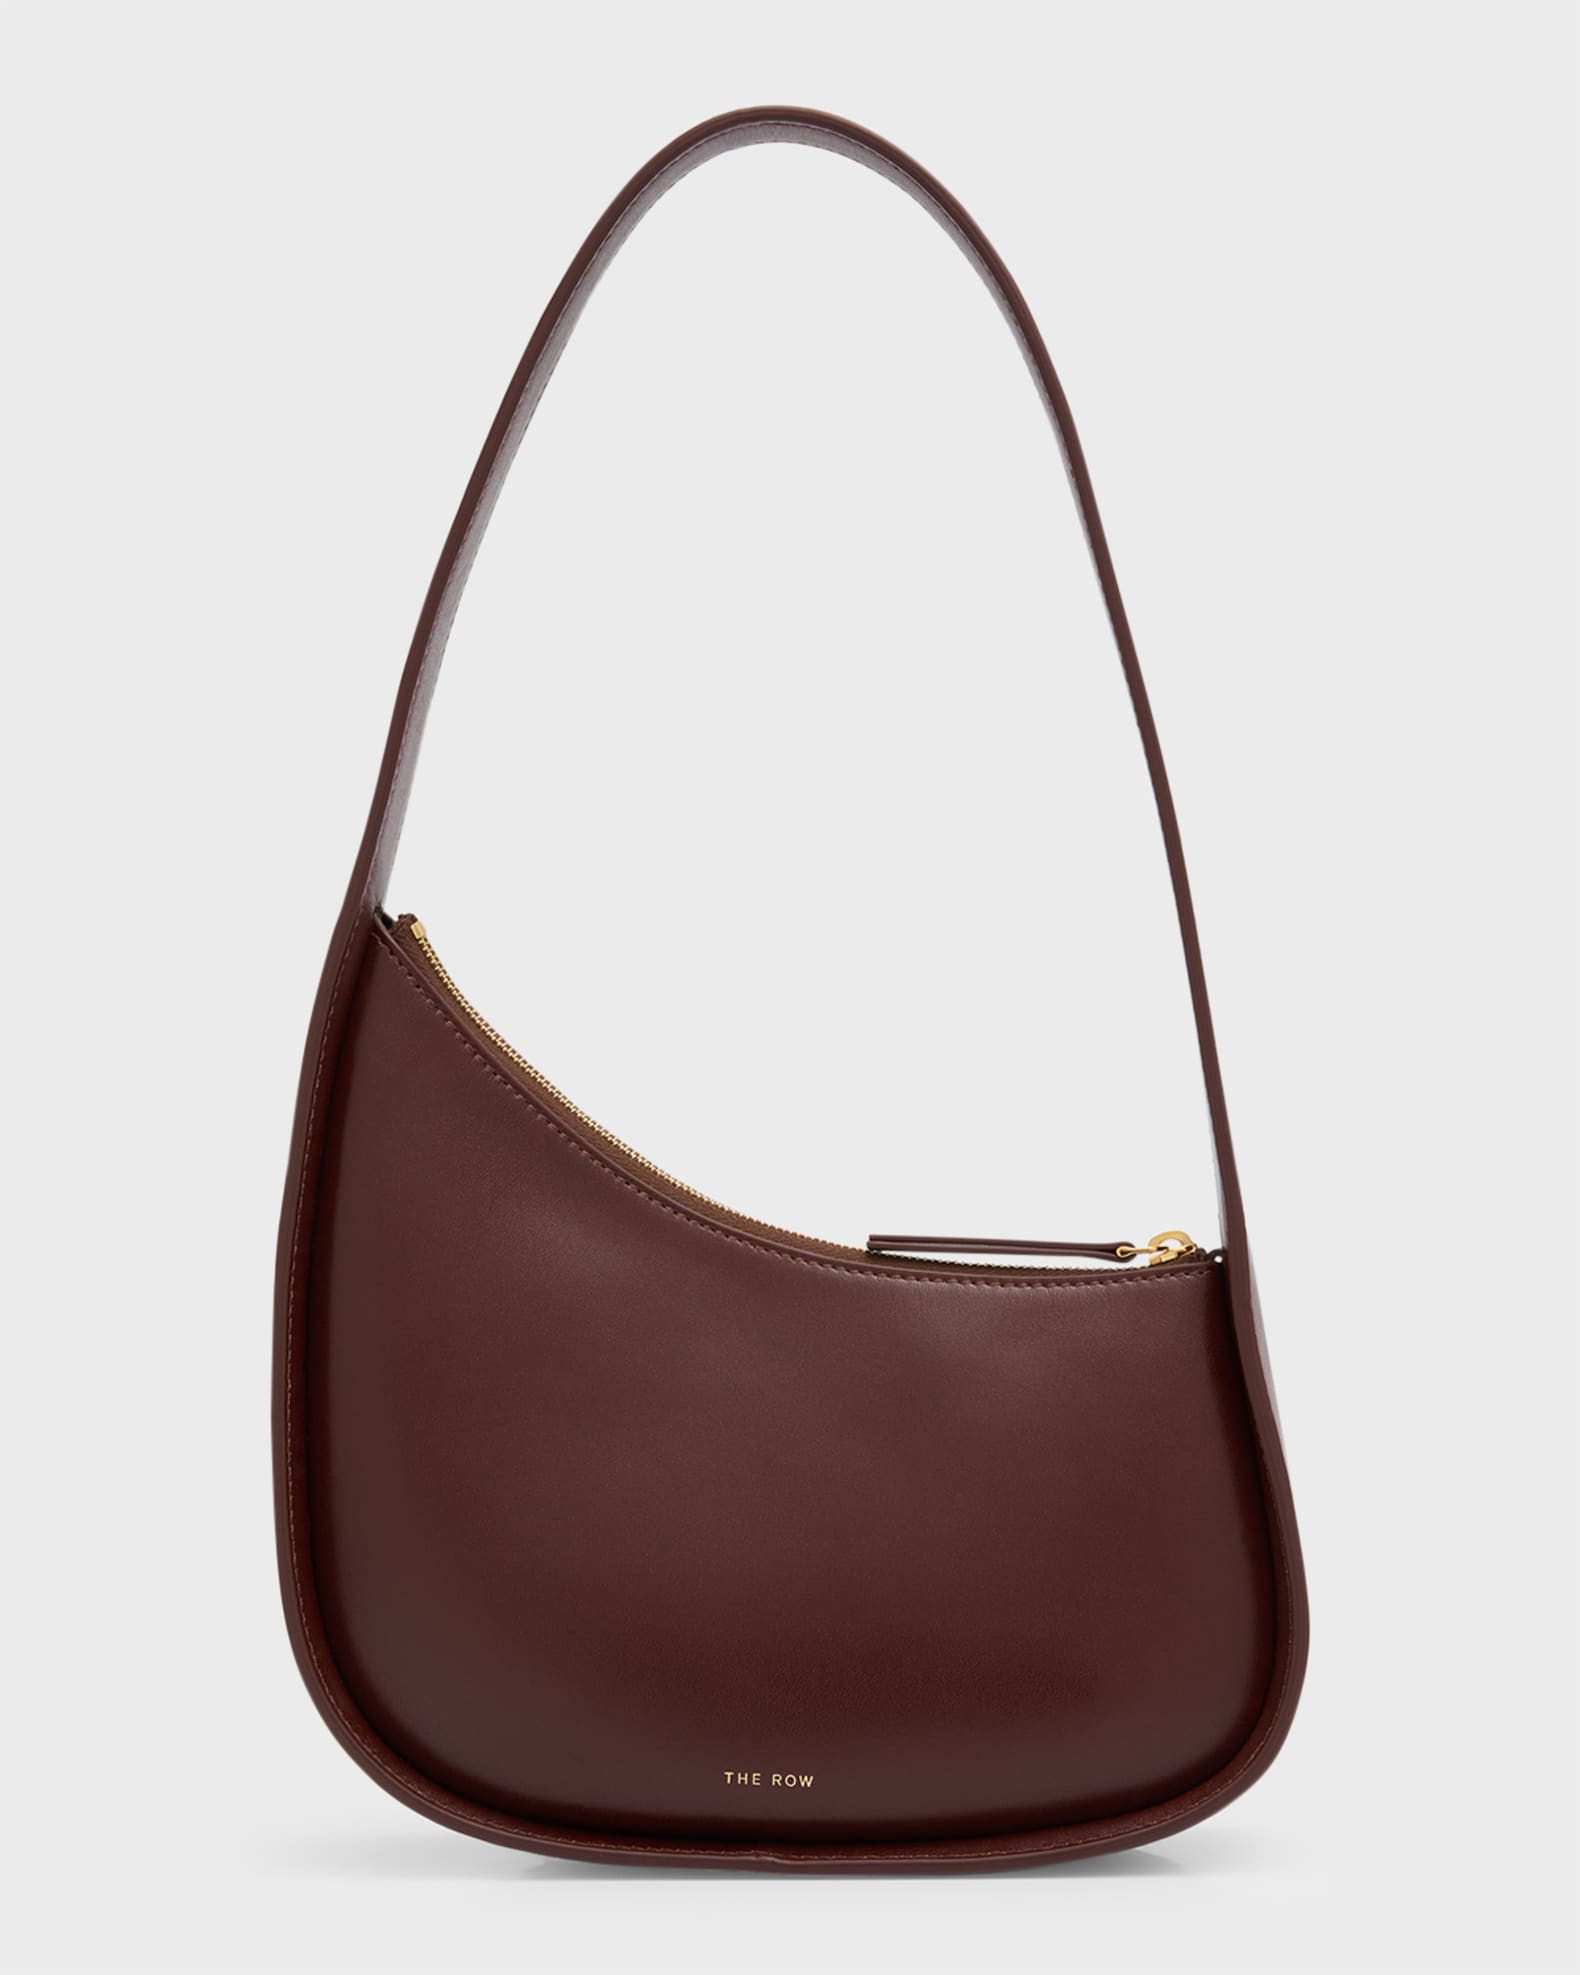 Collectible Louis Vuitton Golden Arrow Bag 2012 Ltd. Edition - Free Ship  USA